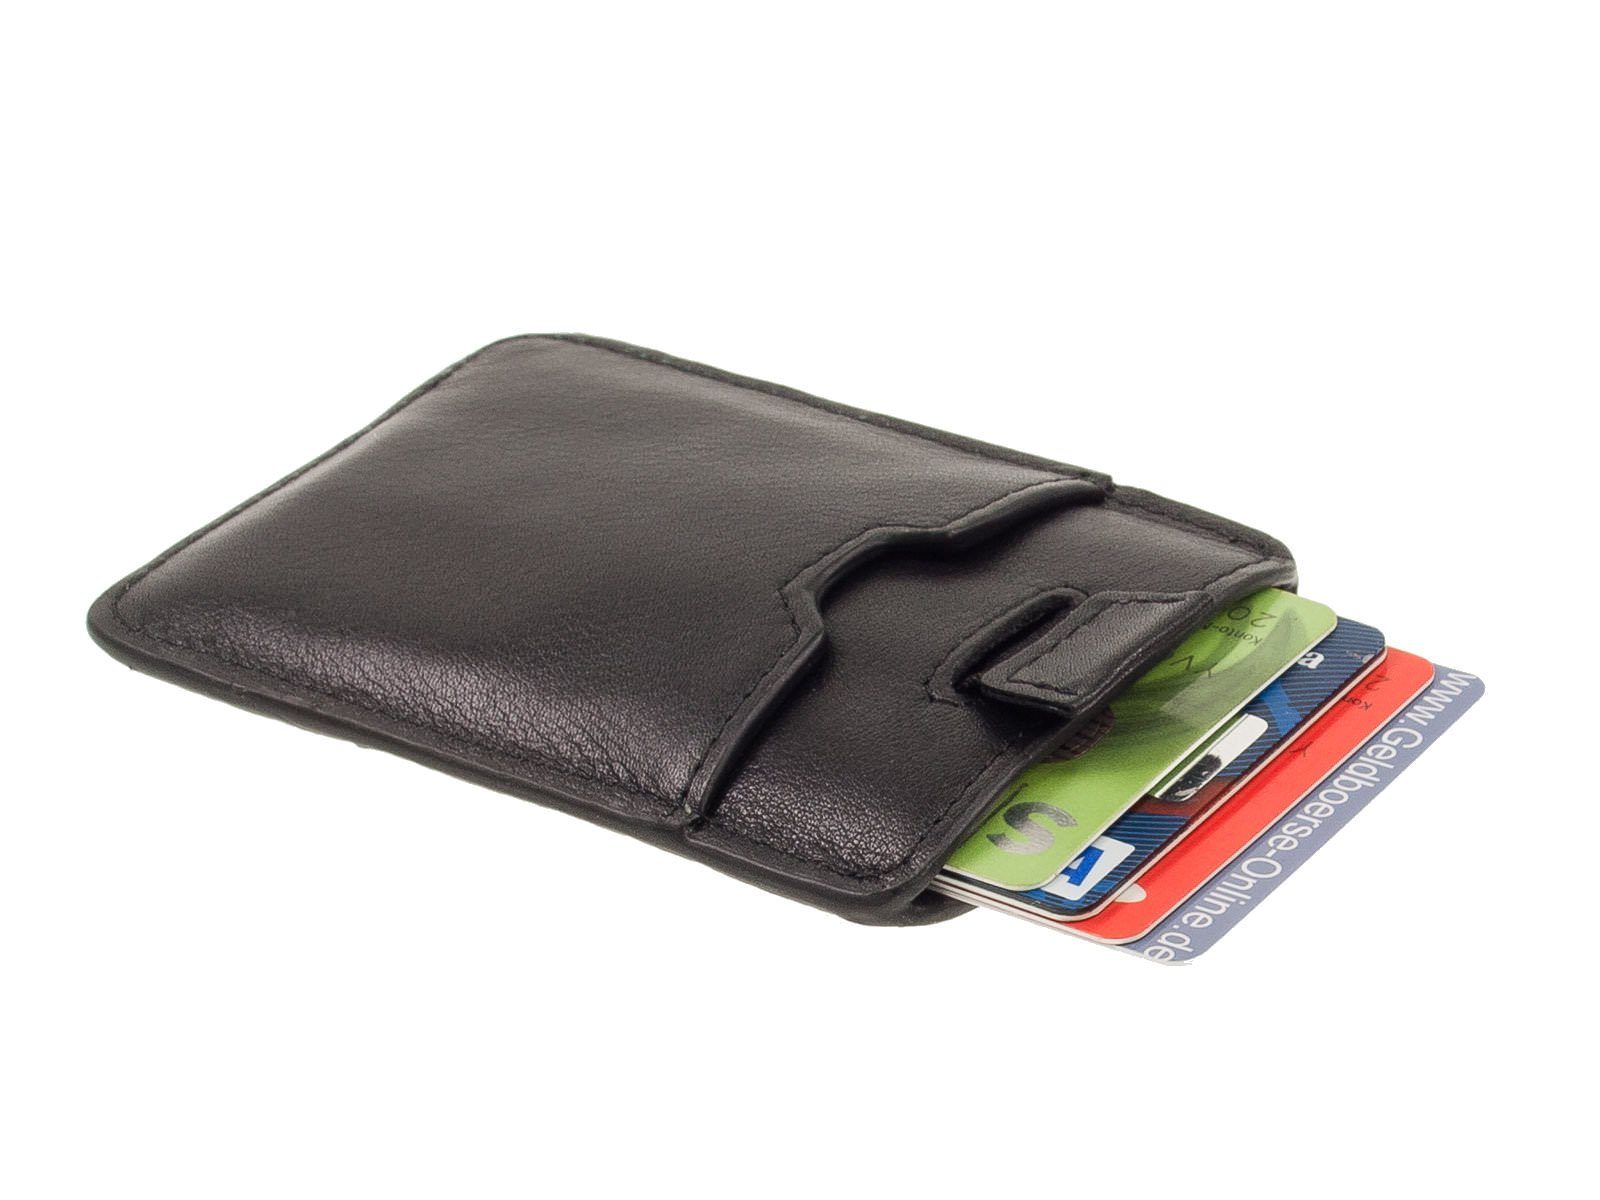 Zugband Safe Soft Picard mit Picard Geldbörse mit Kreditkartenetui